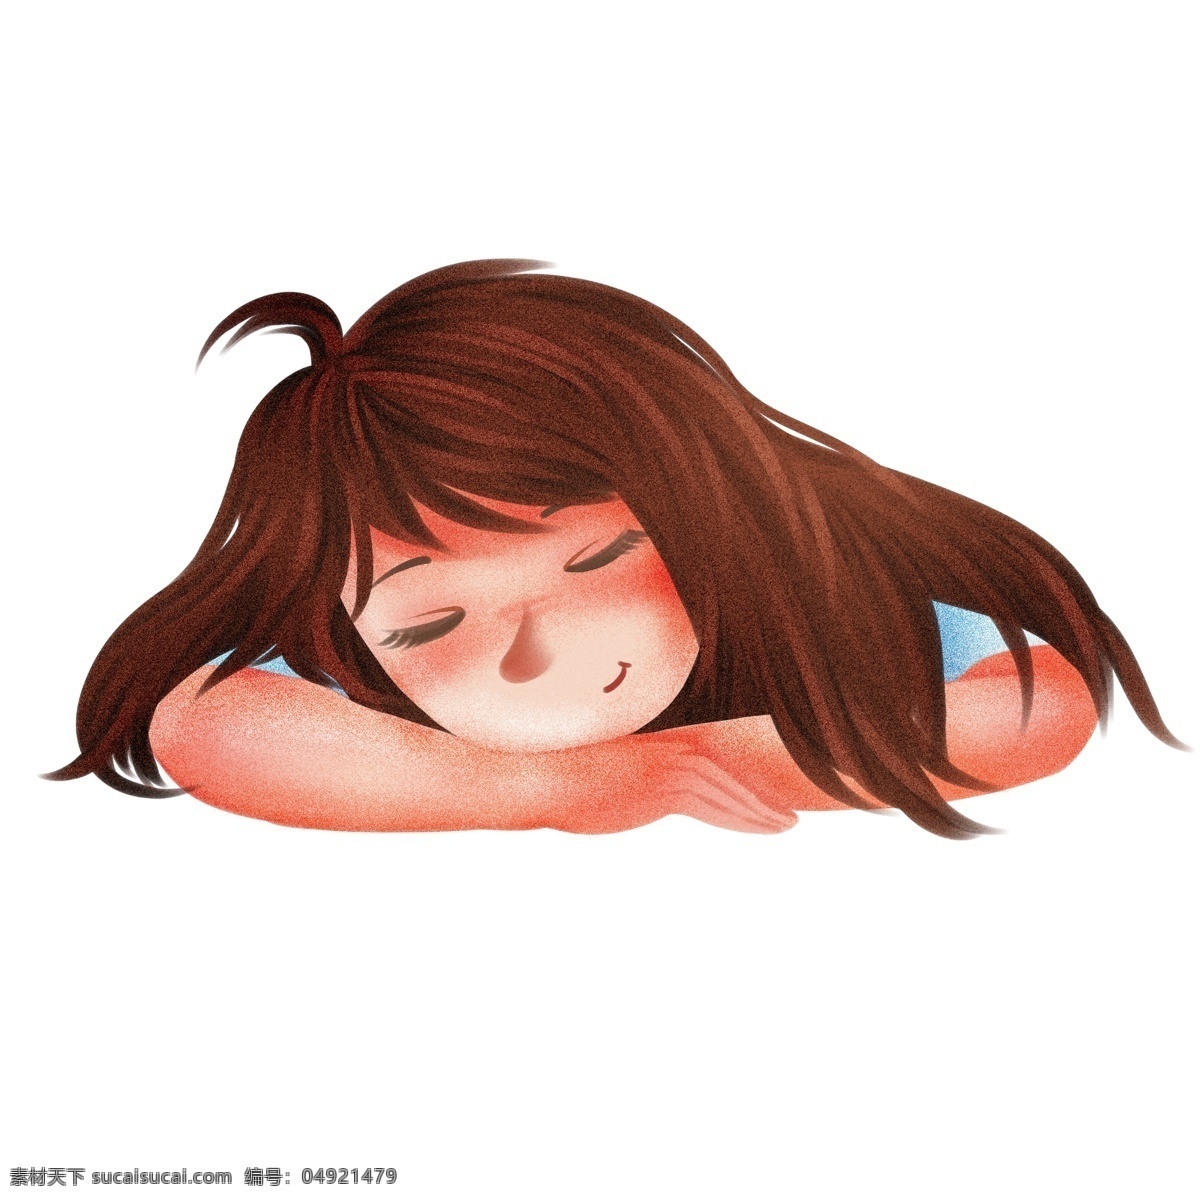 彩绘 一个 趴 睡觉 女孩子 插画 手绘 女孩 可爱 人物 治愈系